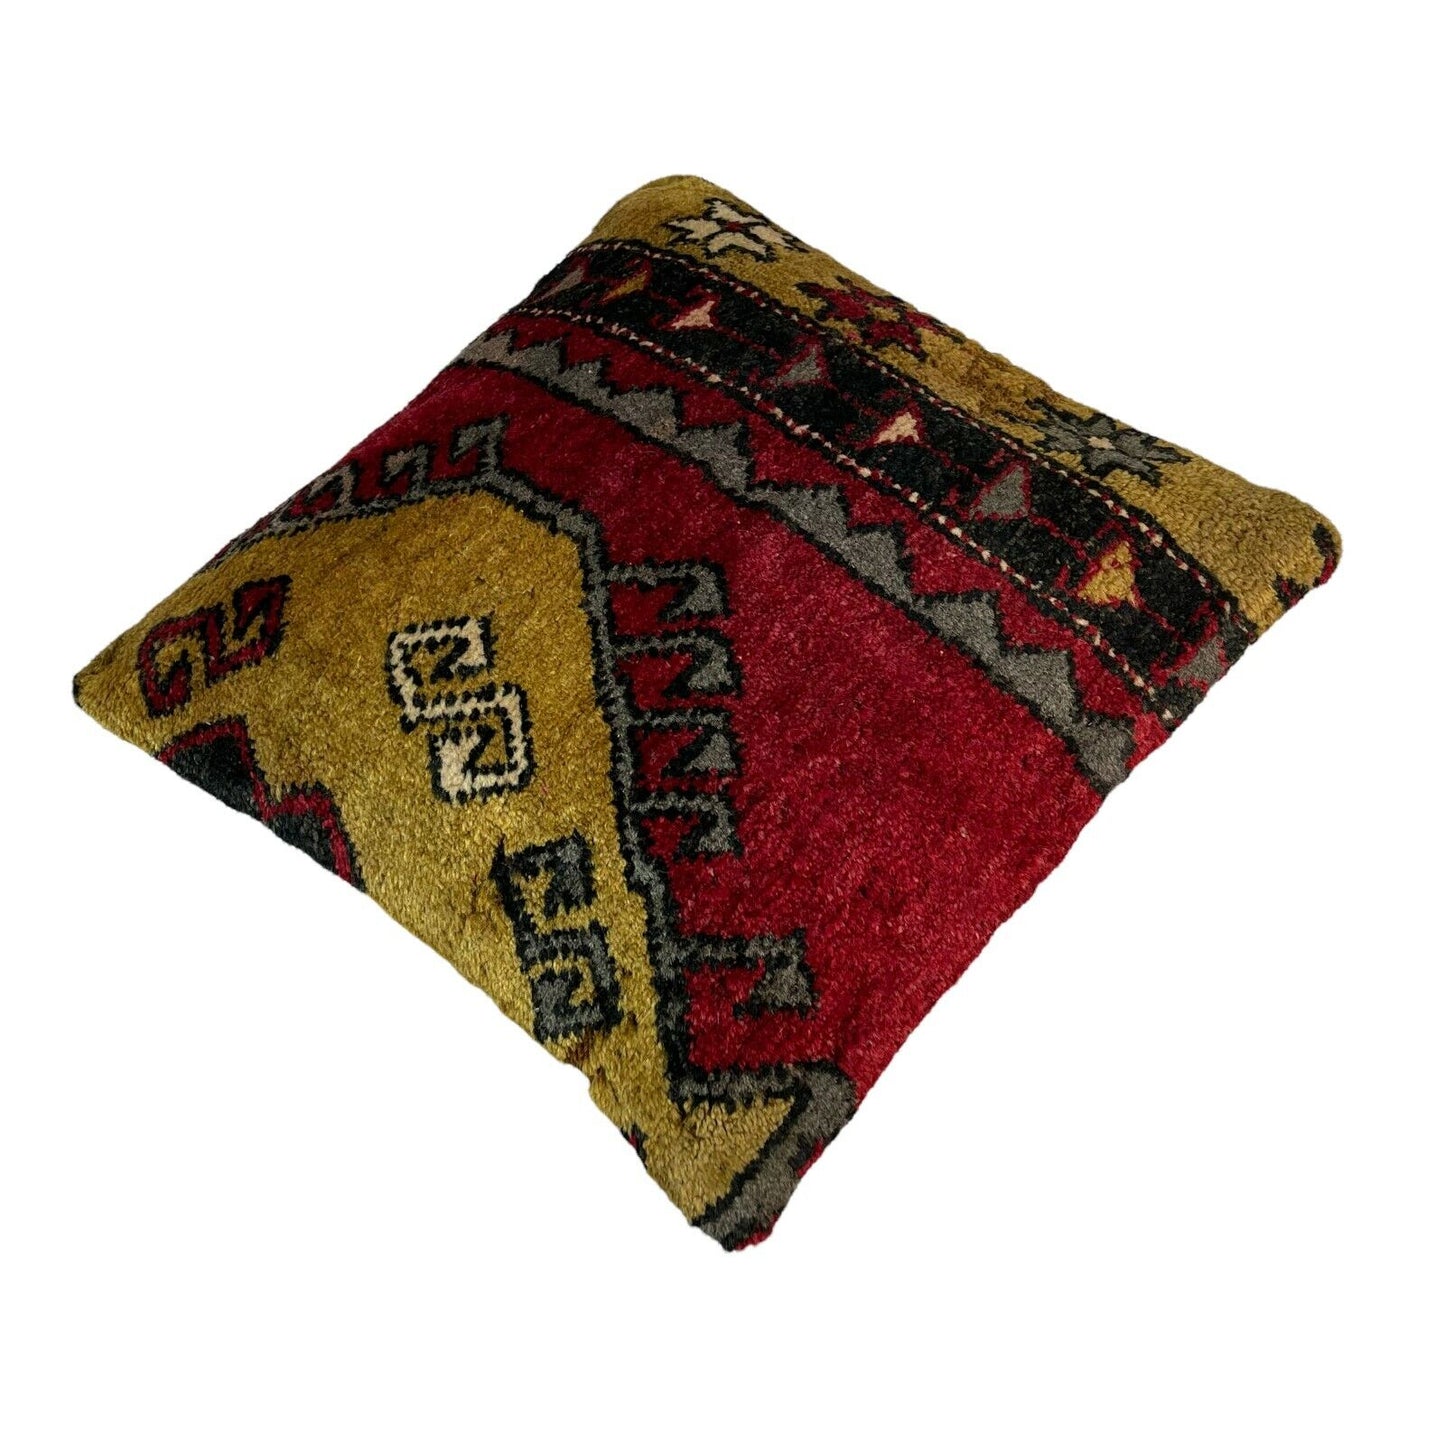 45x45 cm  , Vintage Türkisch  Kissenbezug , Vintage  Cushion Cover